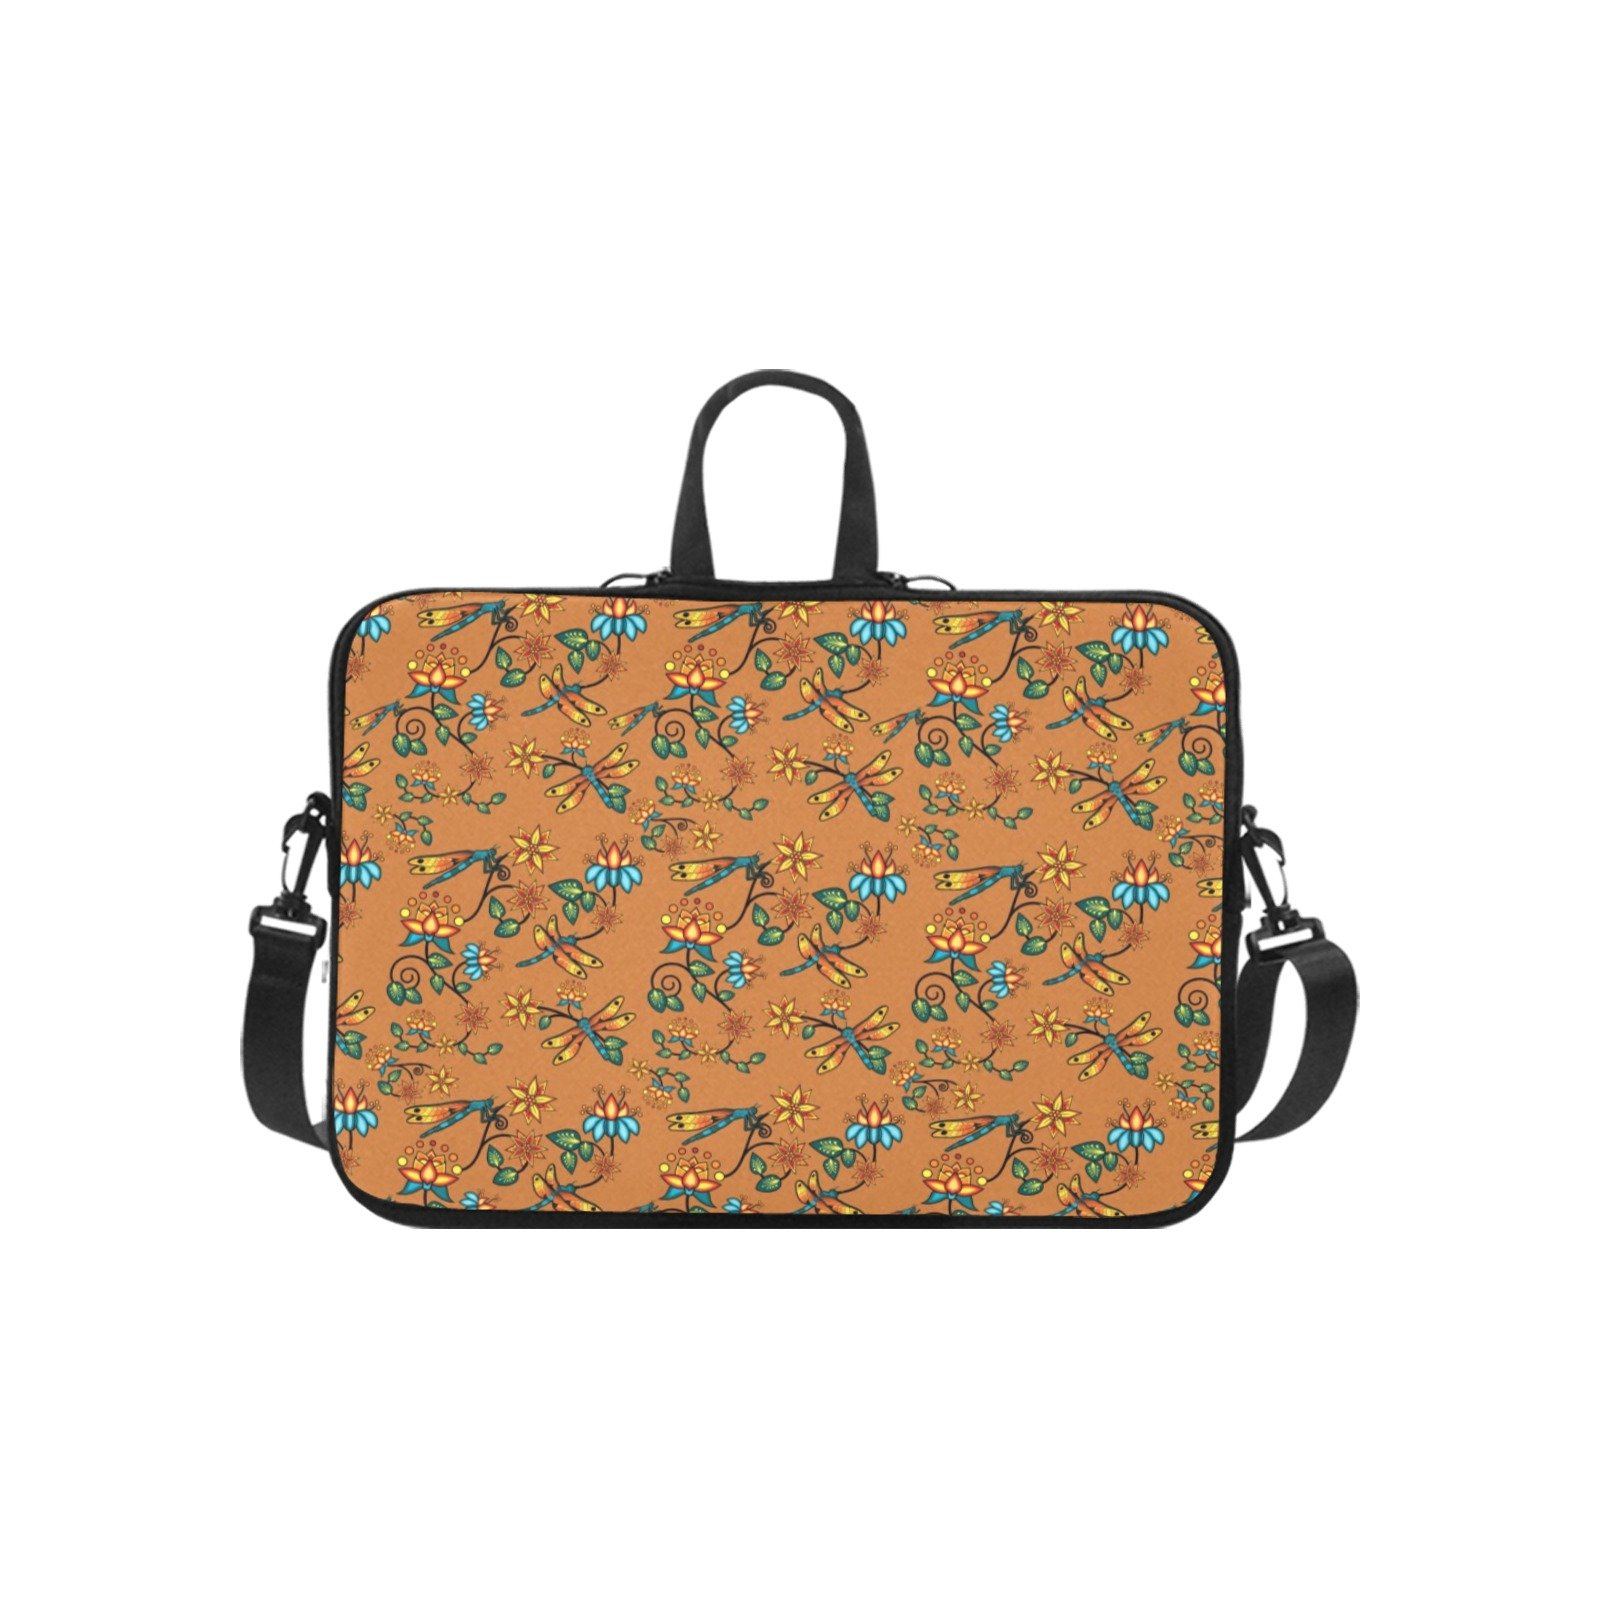 Dragon Lily Sierra Laptop Handbags 10" bag e-joyer 